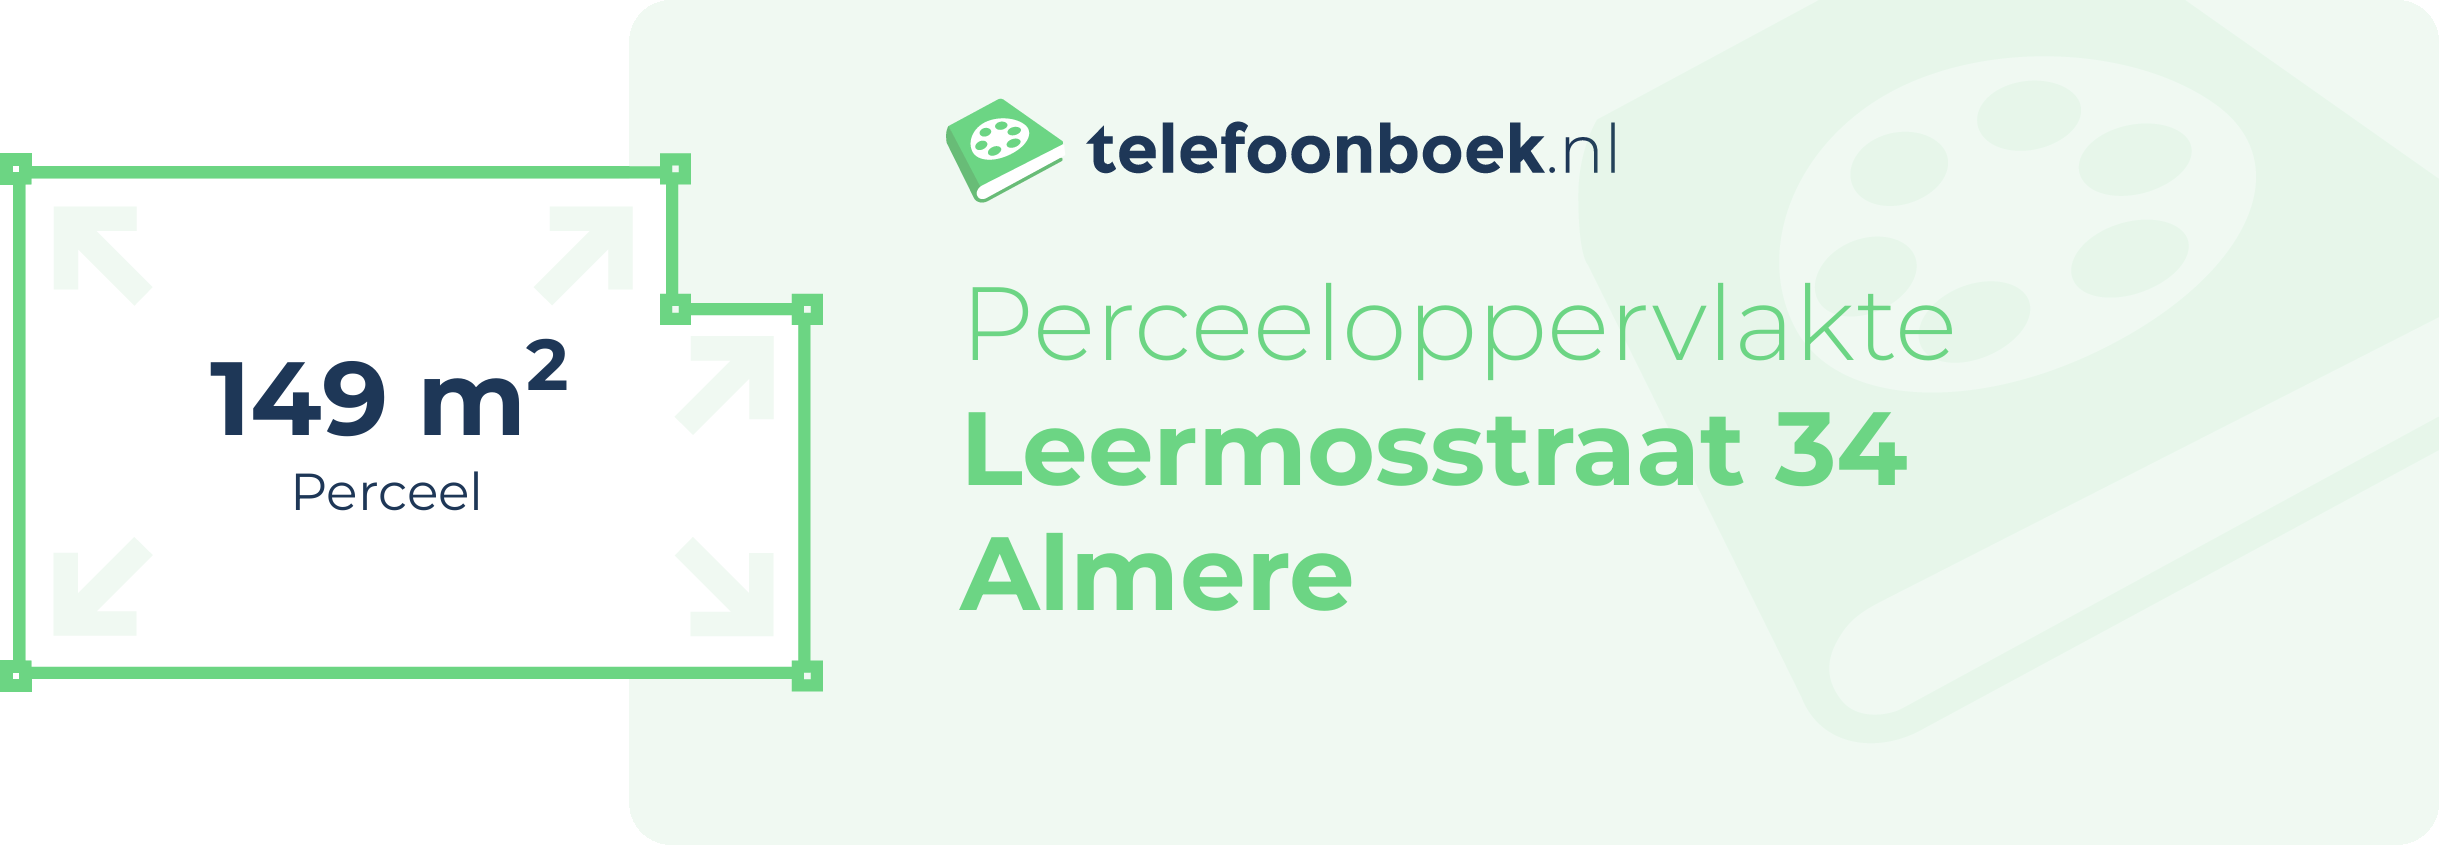 Perceeloppervlakte Leermosstraat 34 Almere